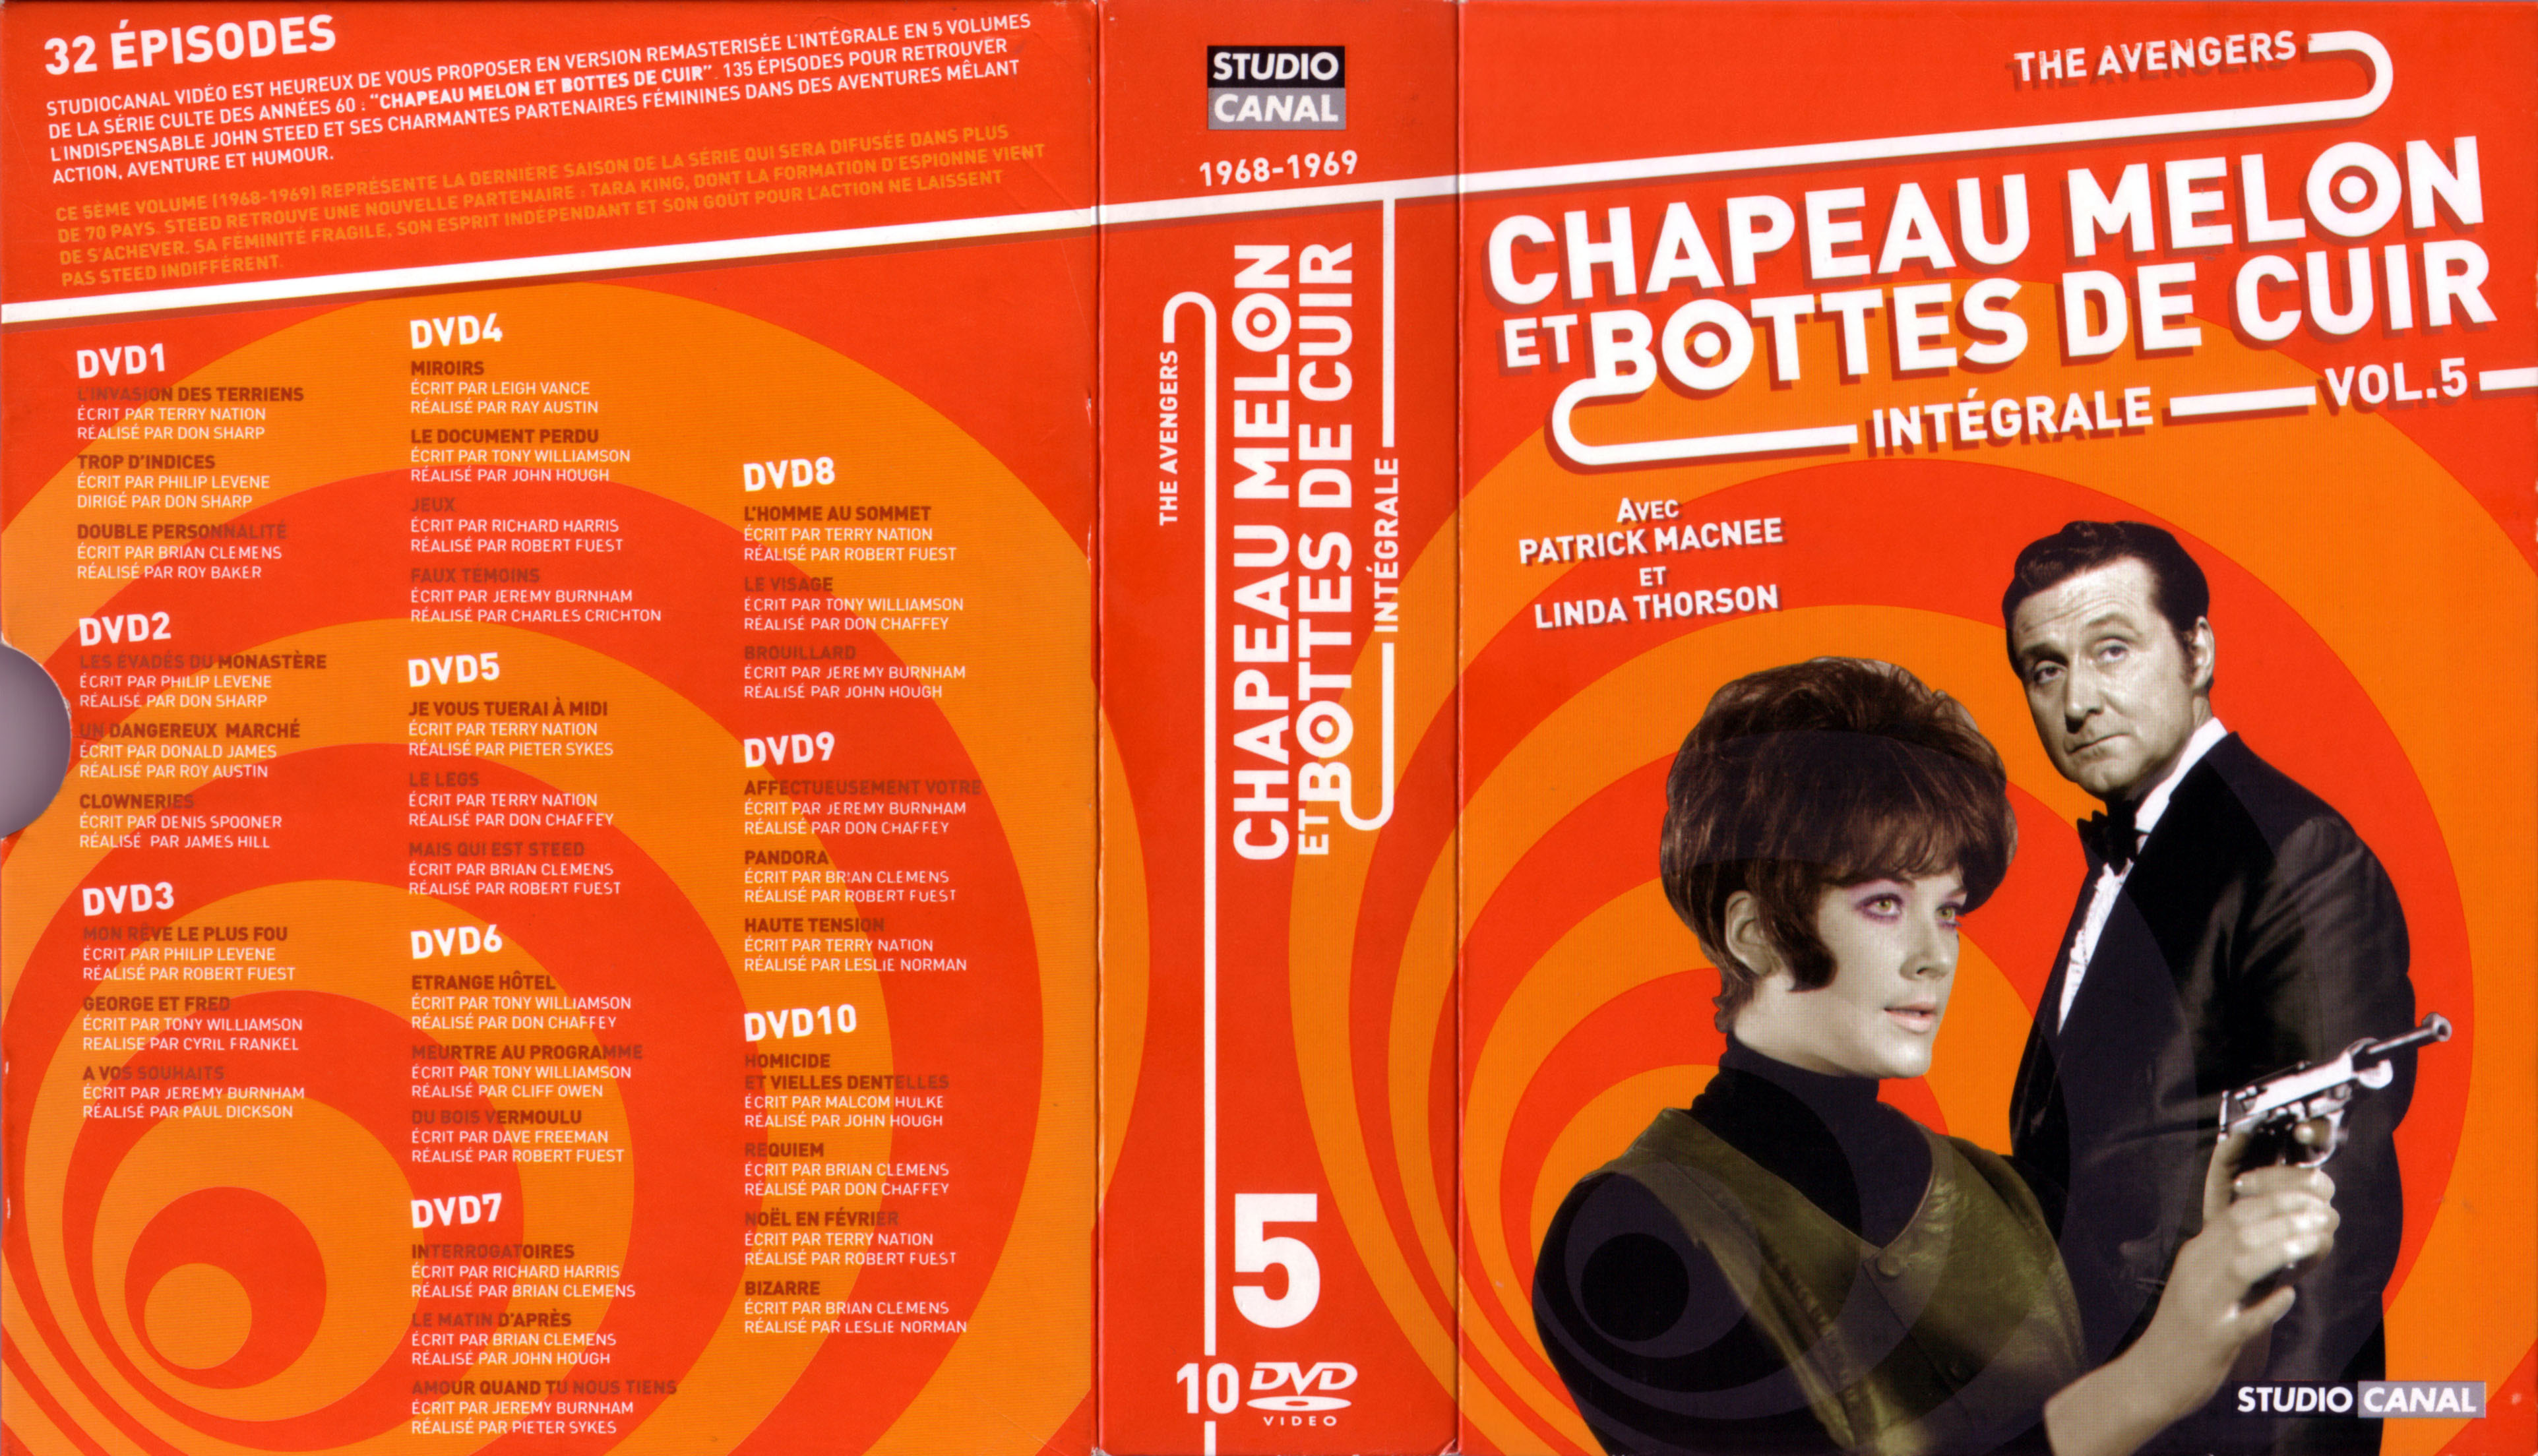 Jaquette DVD Chapeau melon et bottes de cuir Integrale vol 05